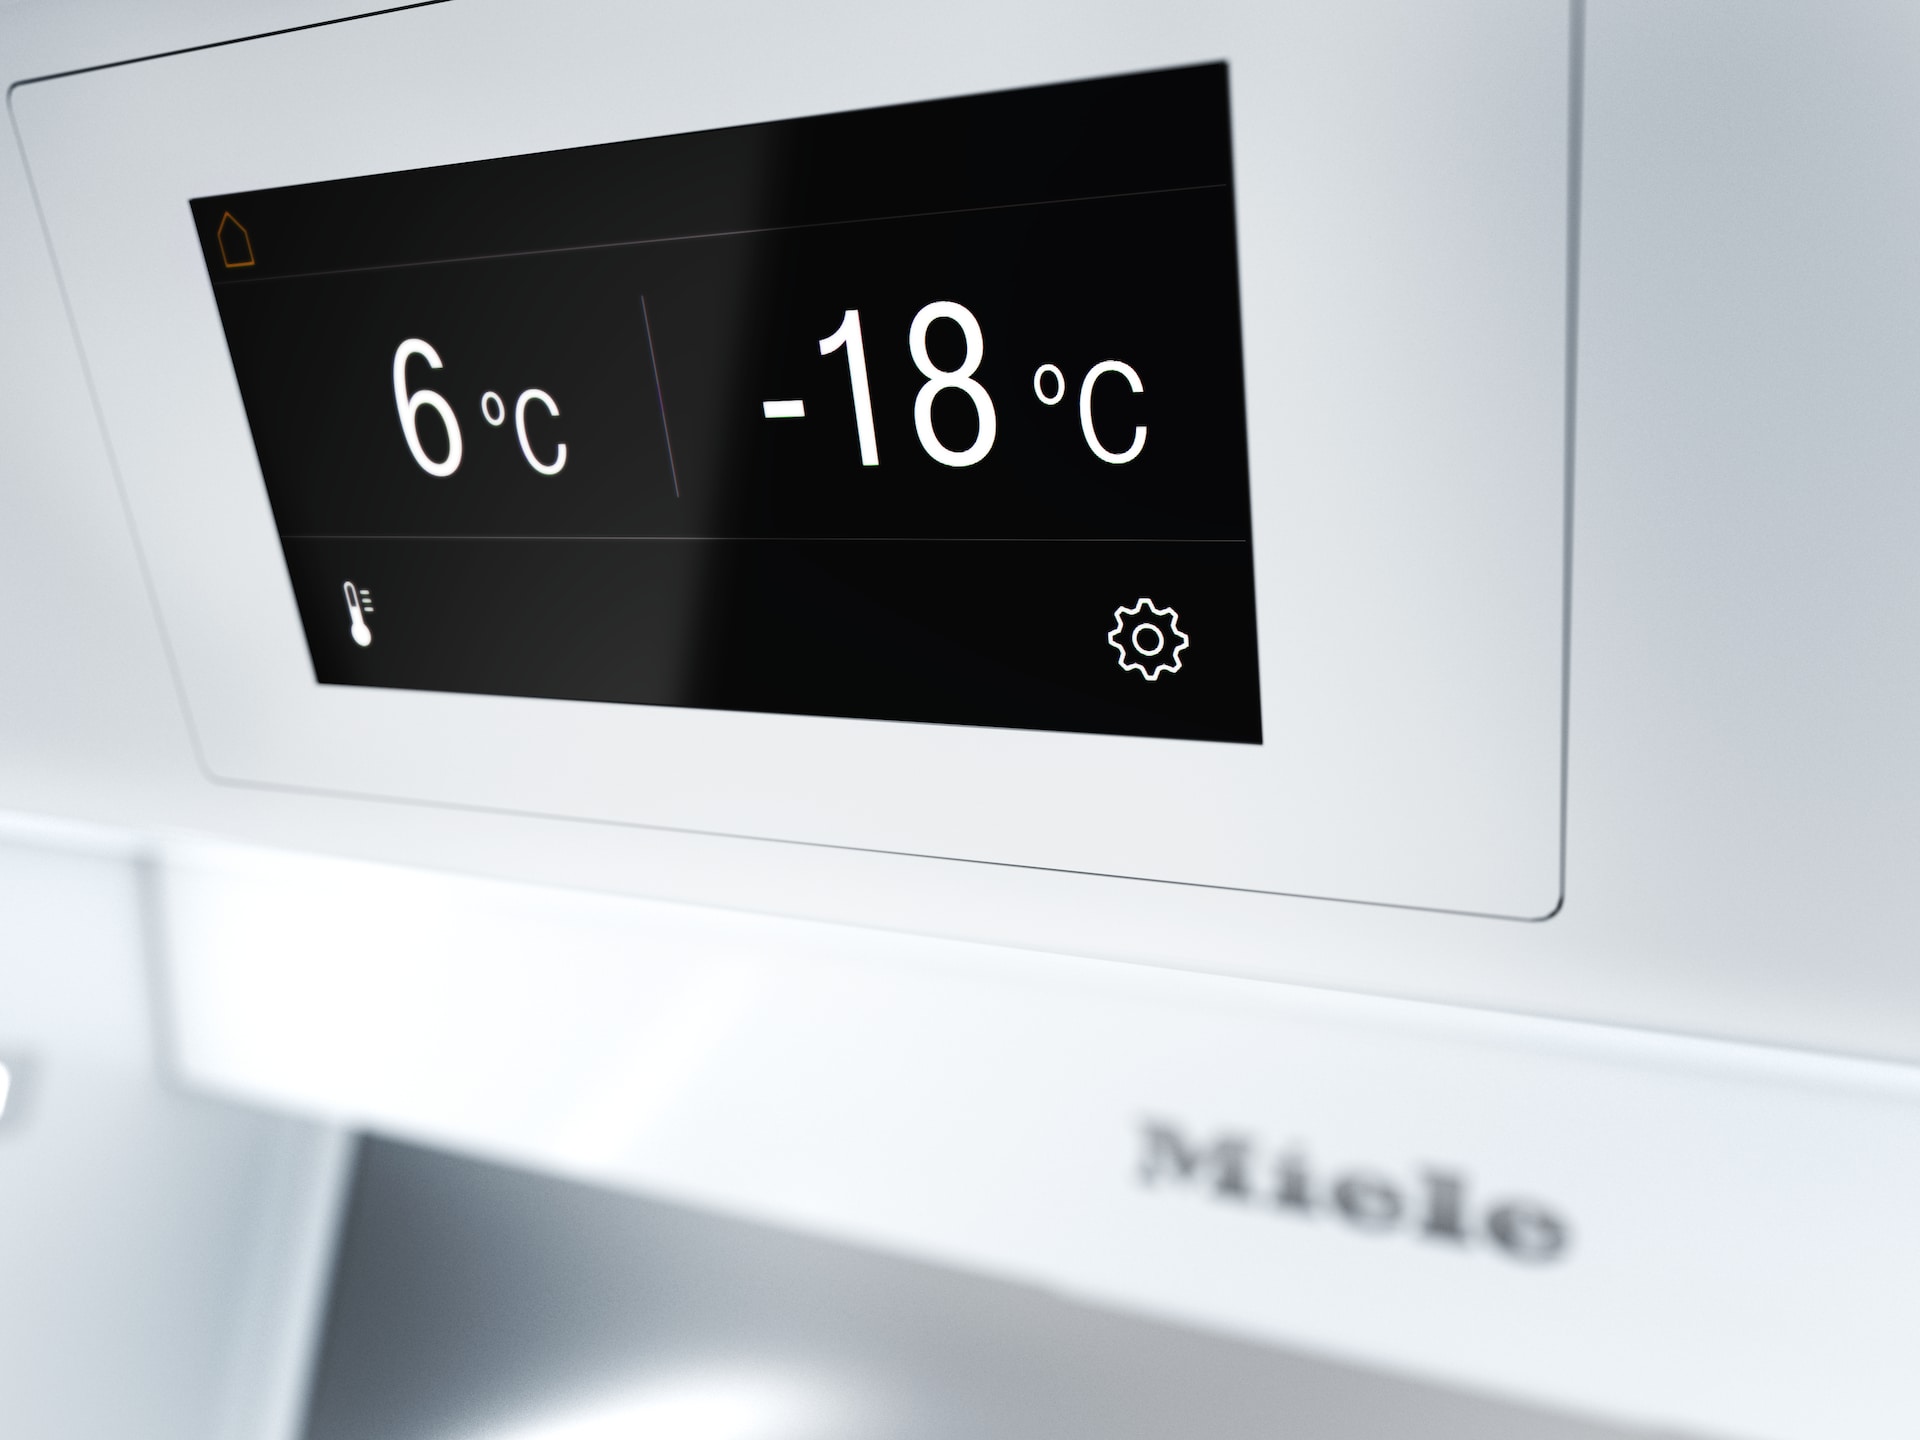 Réfrigérateurs/congélateurs - F 2812 Vi - 7